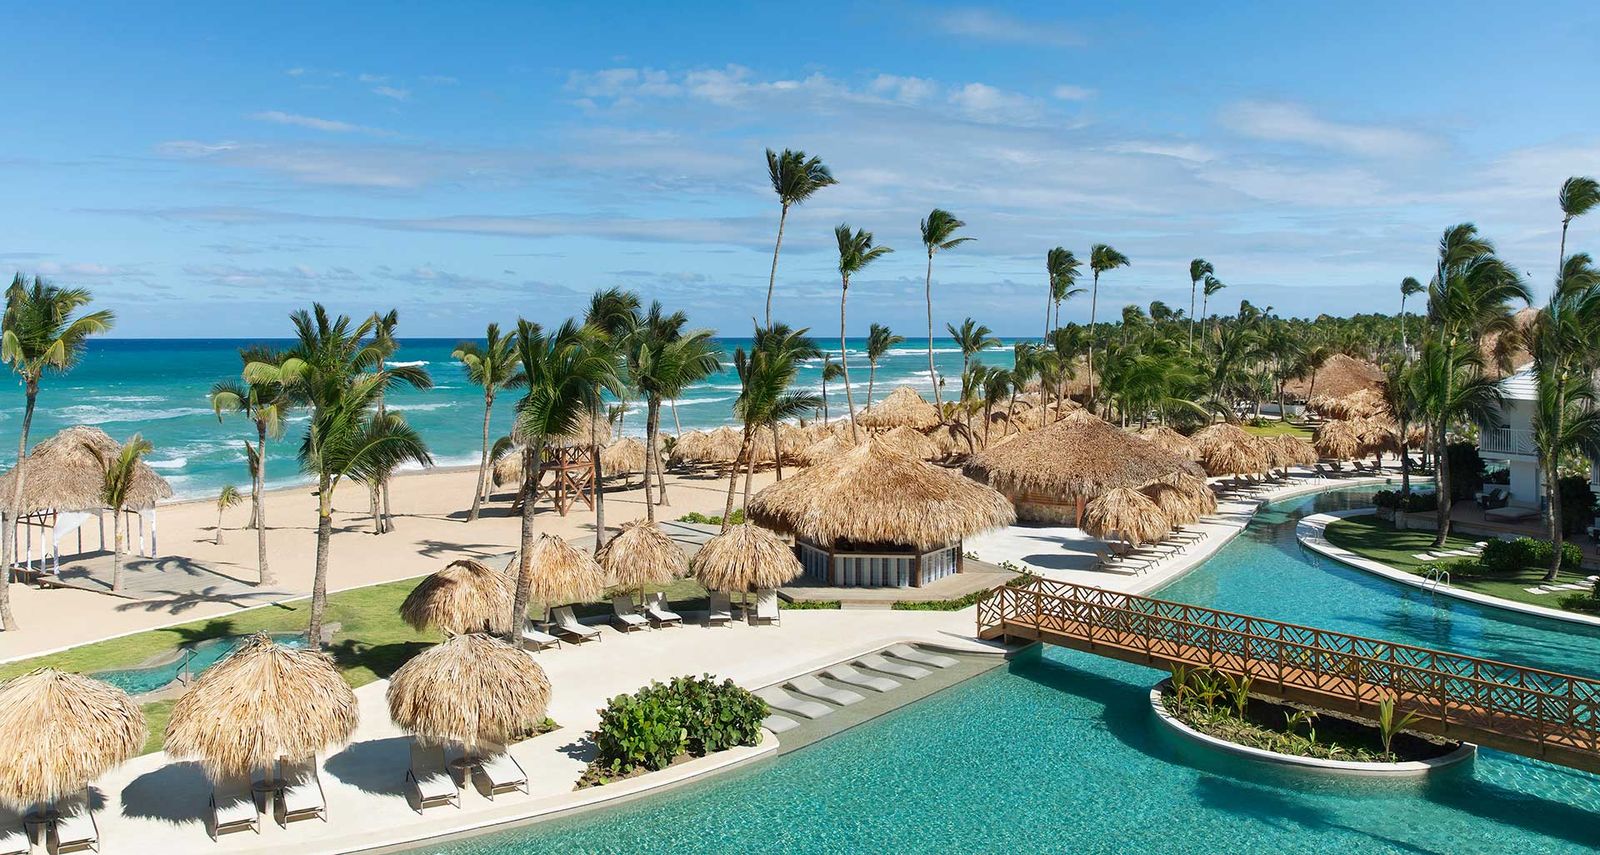 Punta Cana lidera el ranking del Índice de ciudades destino a nivel global